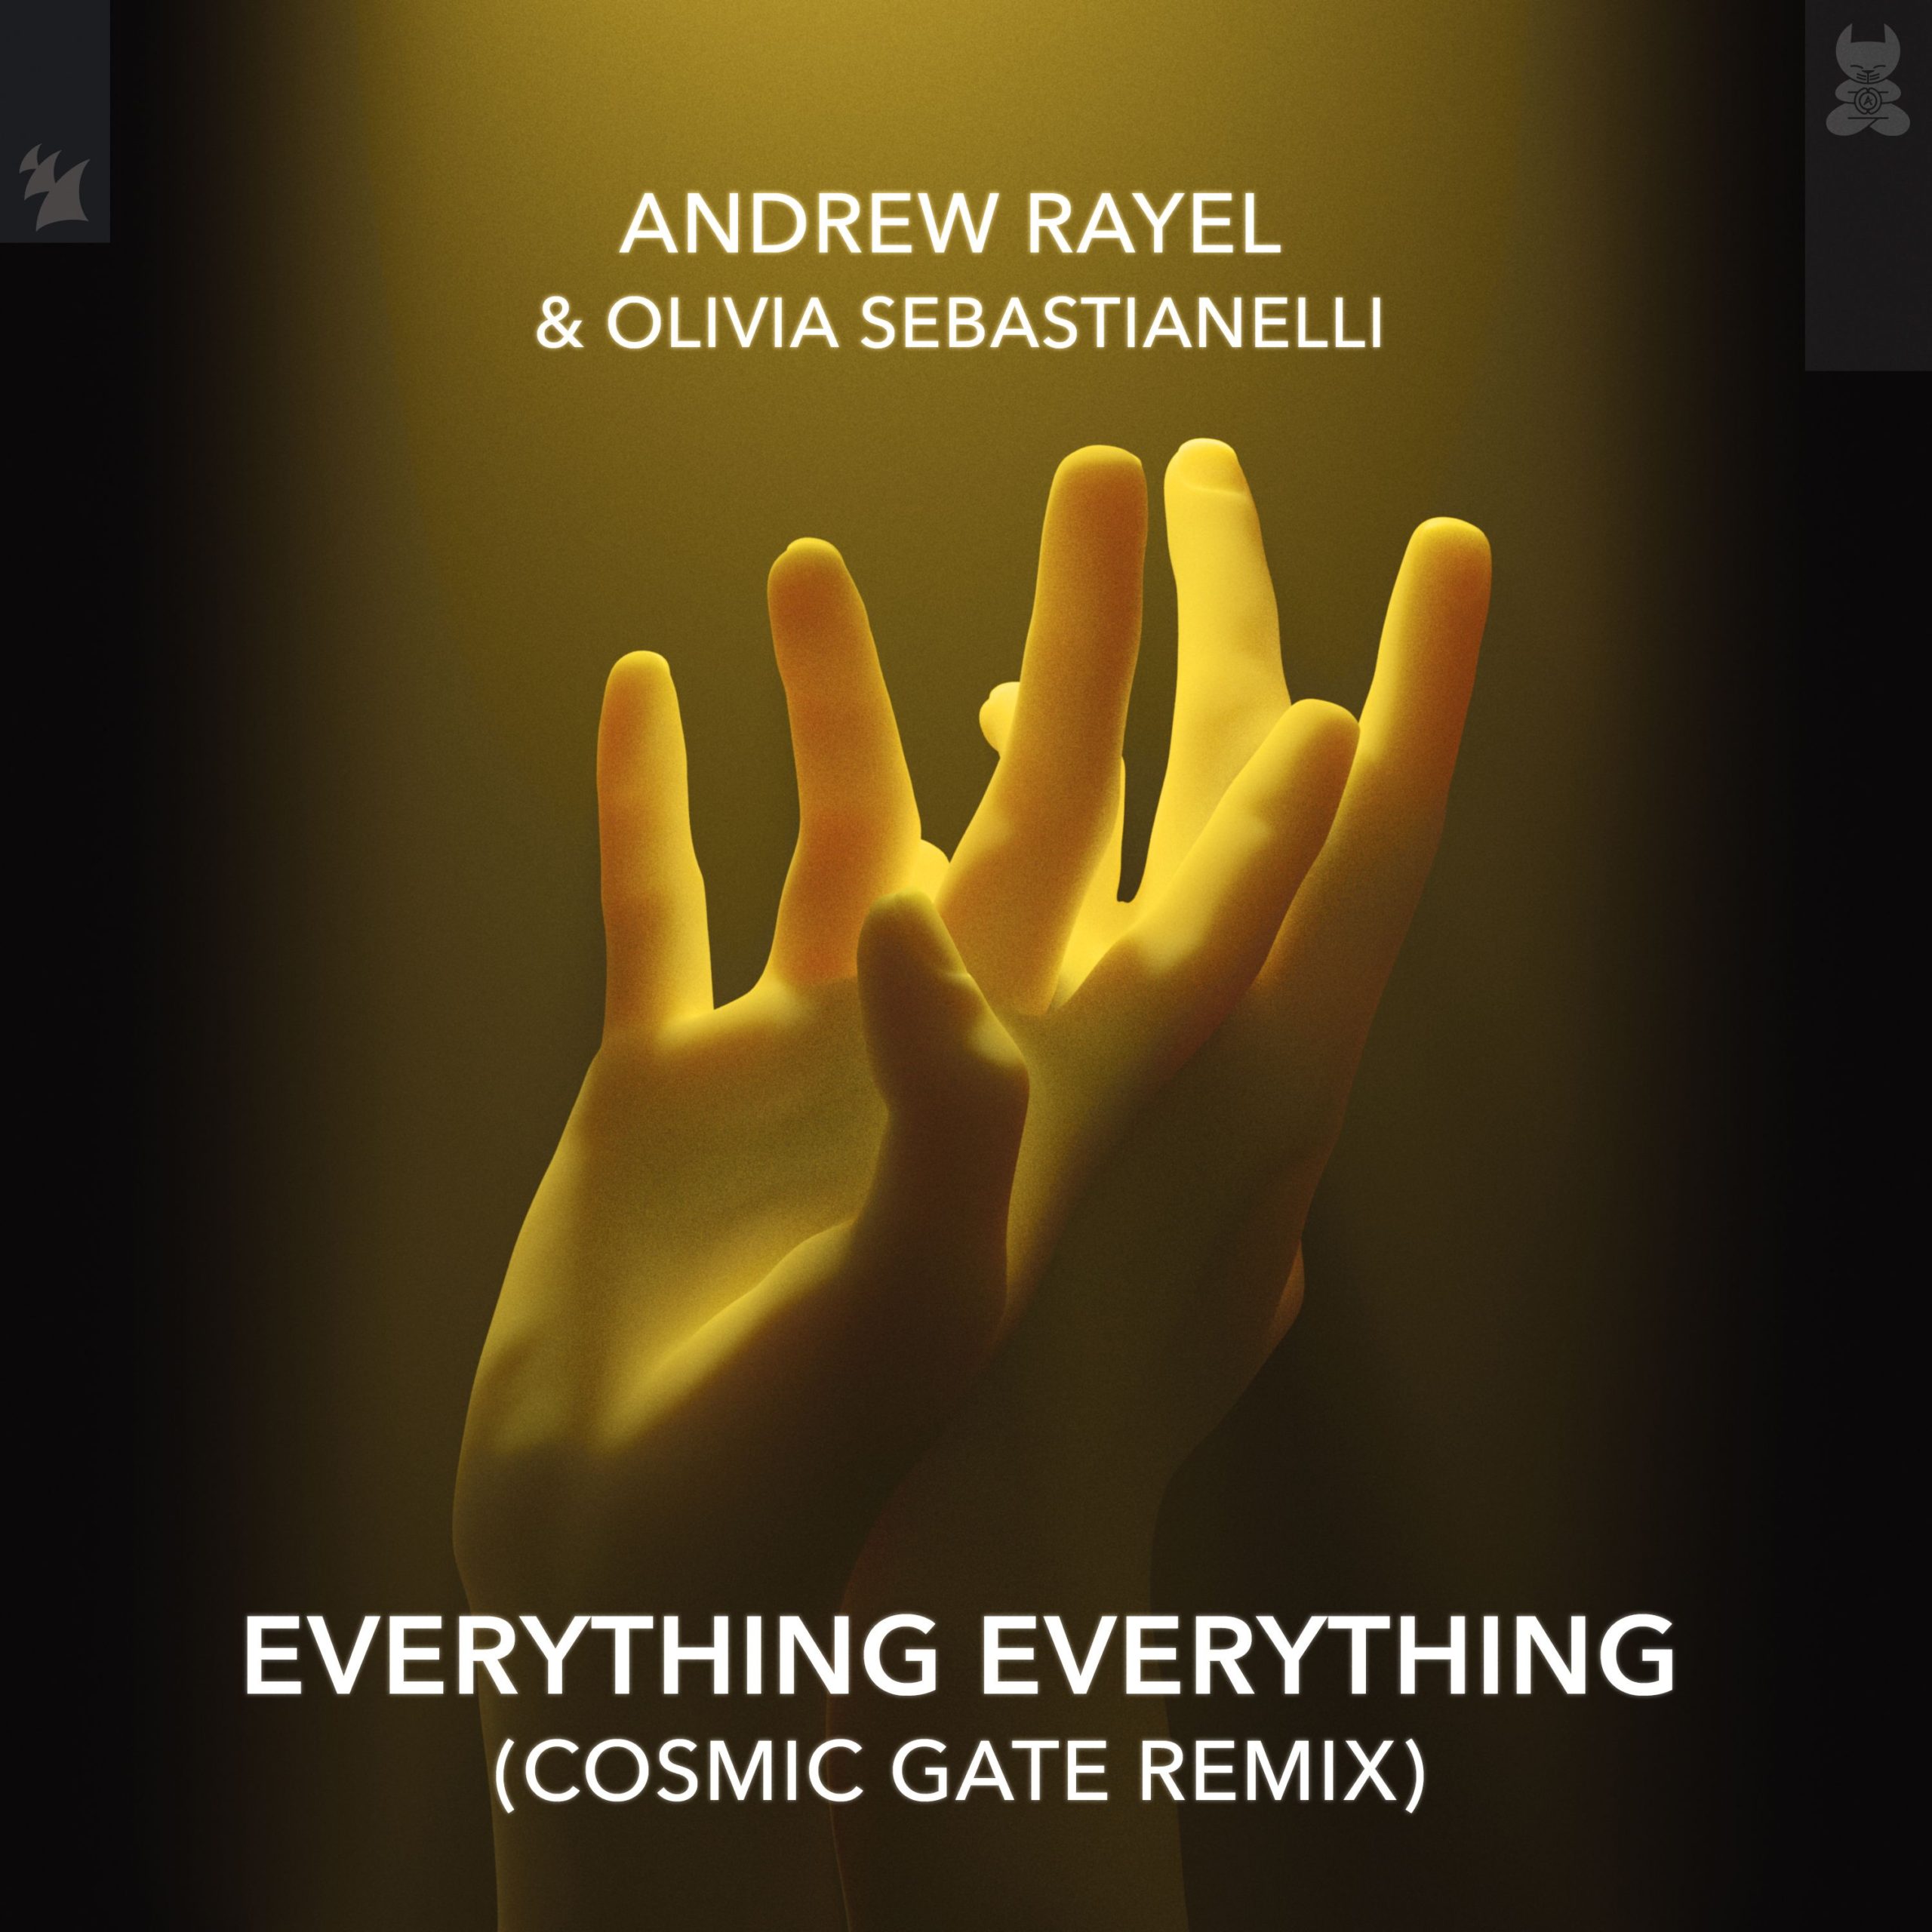 Andrew Rayel and Olivia Sebastianelli presents Everything Everything (Cosmic Gate Remix) on Armada Music